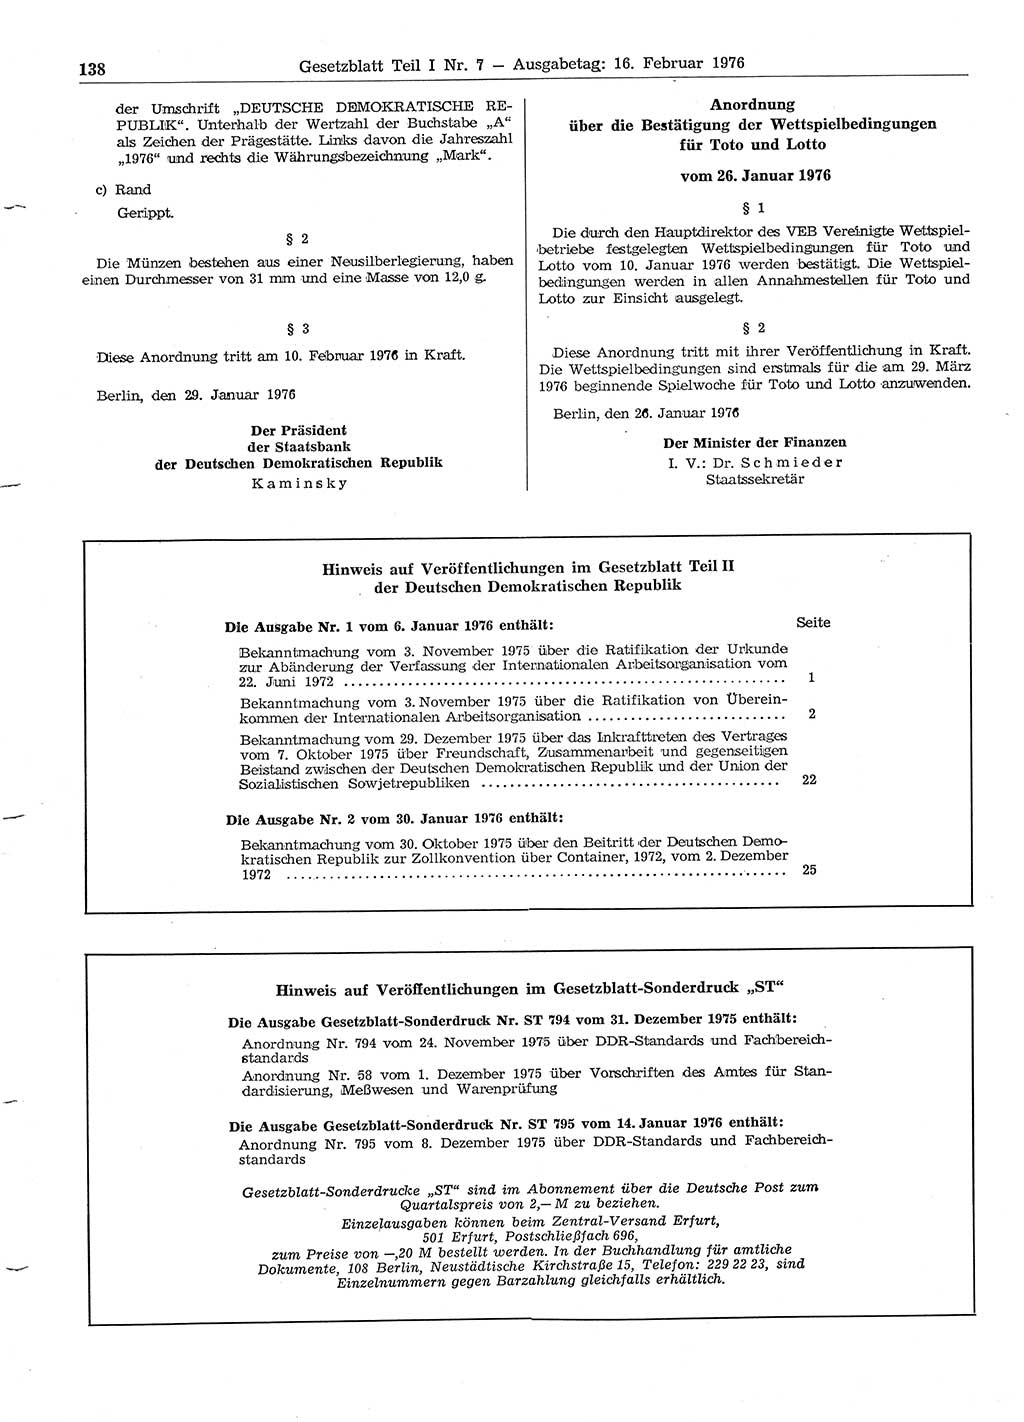 Gesetzblatt (GBl.) der Deutschen Demokratischen Republik (DDR) Teil Ⅰ 1976, Seite 138 (GBl. DDR Ⅰ 1976, S. 138)